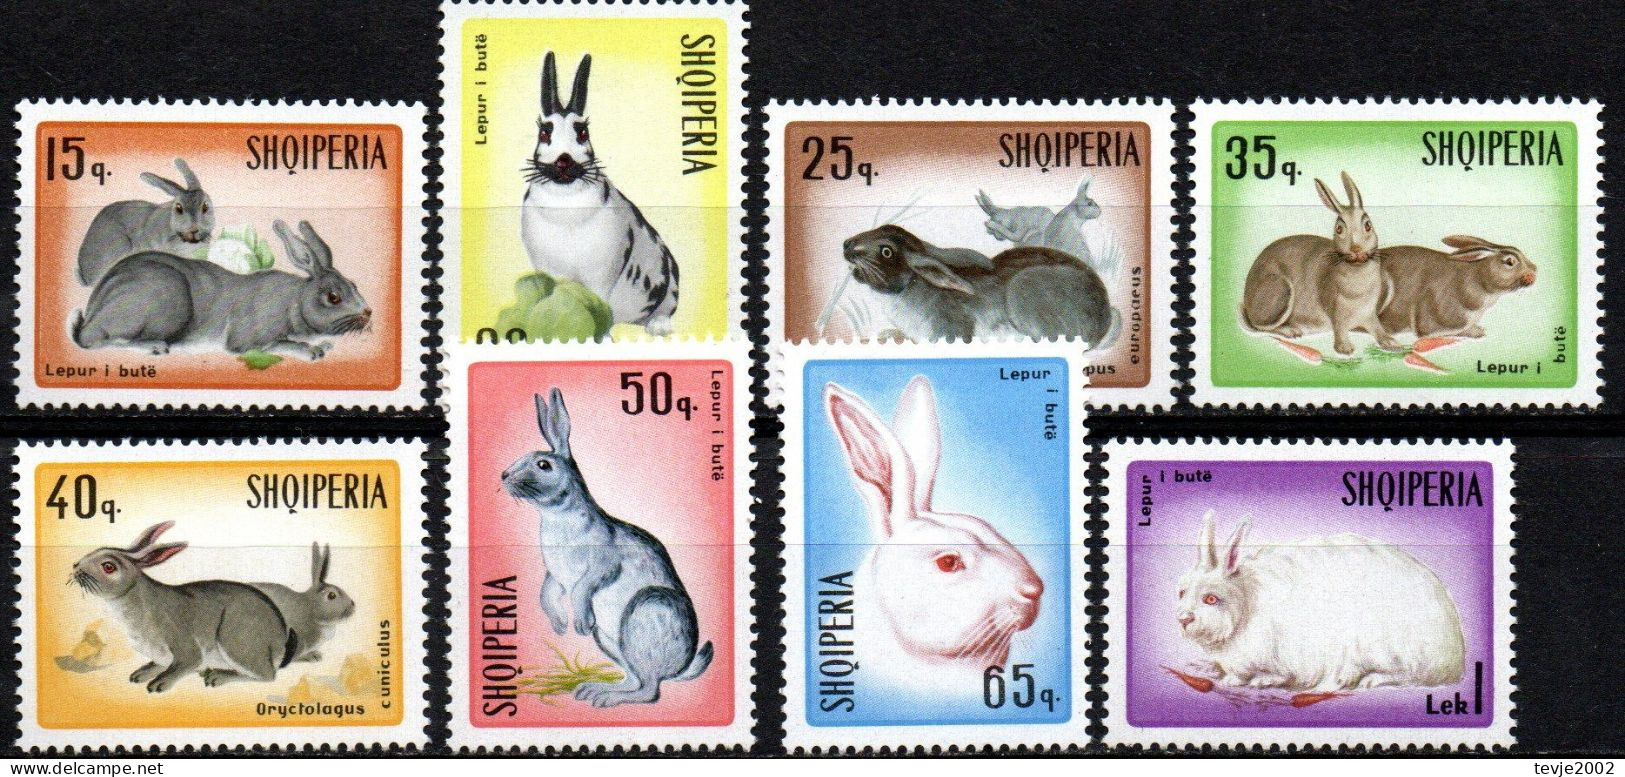 Albanien 1967 - Mi.Nr. 1193 - 1200 - Postfrisch MNH - Tiere Animals Hasen Kaninchen Rabbits - Roedores